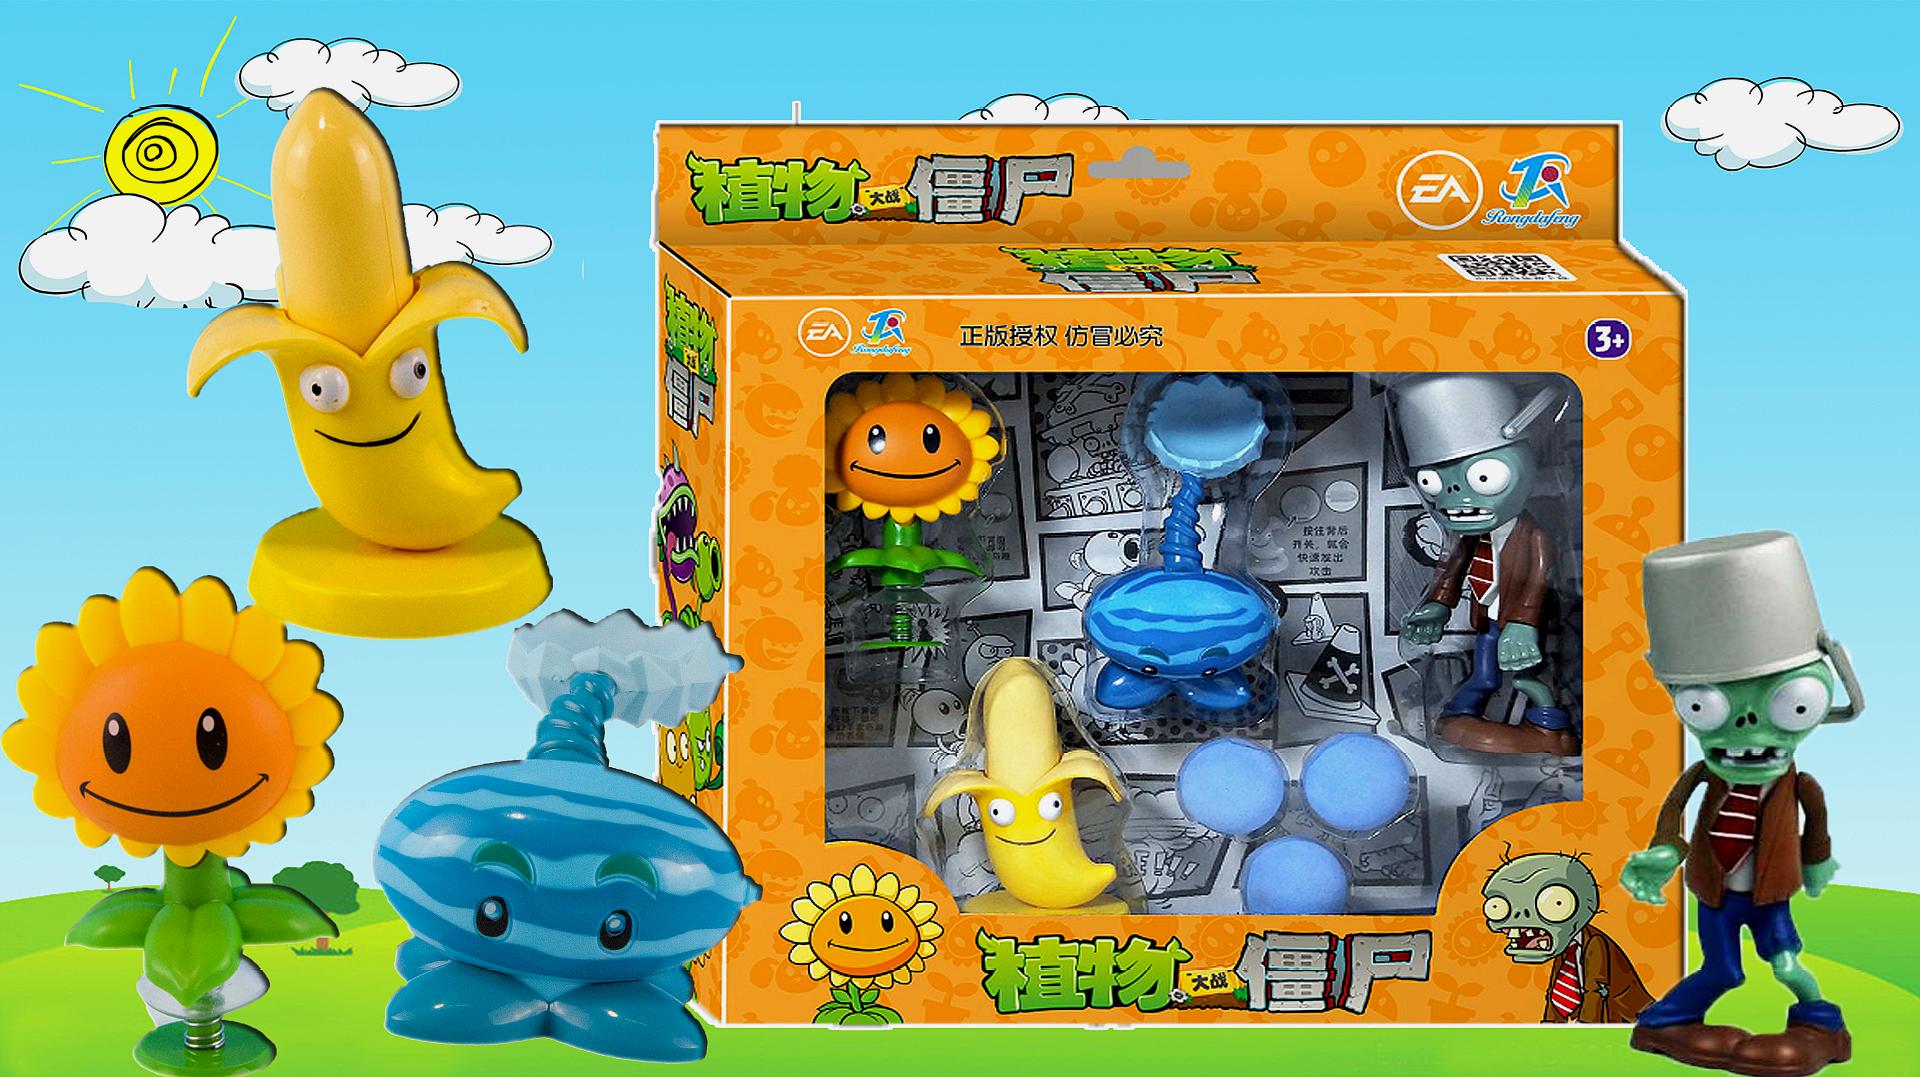 植物大战僵尸玩具,冰冻西瓜投手向日葵和香蕉火箭炮套盒玩具!